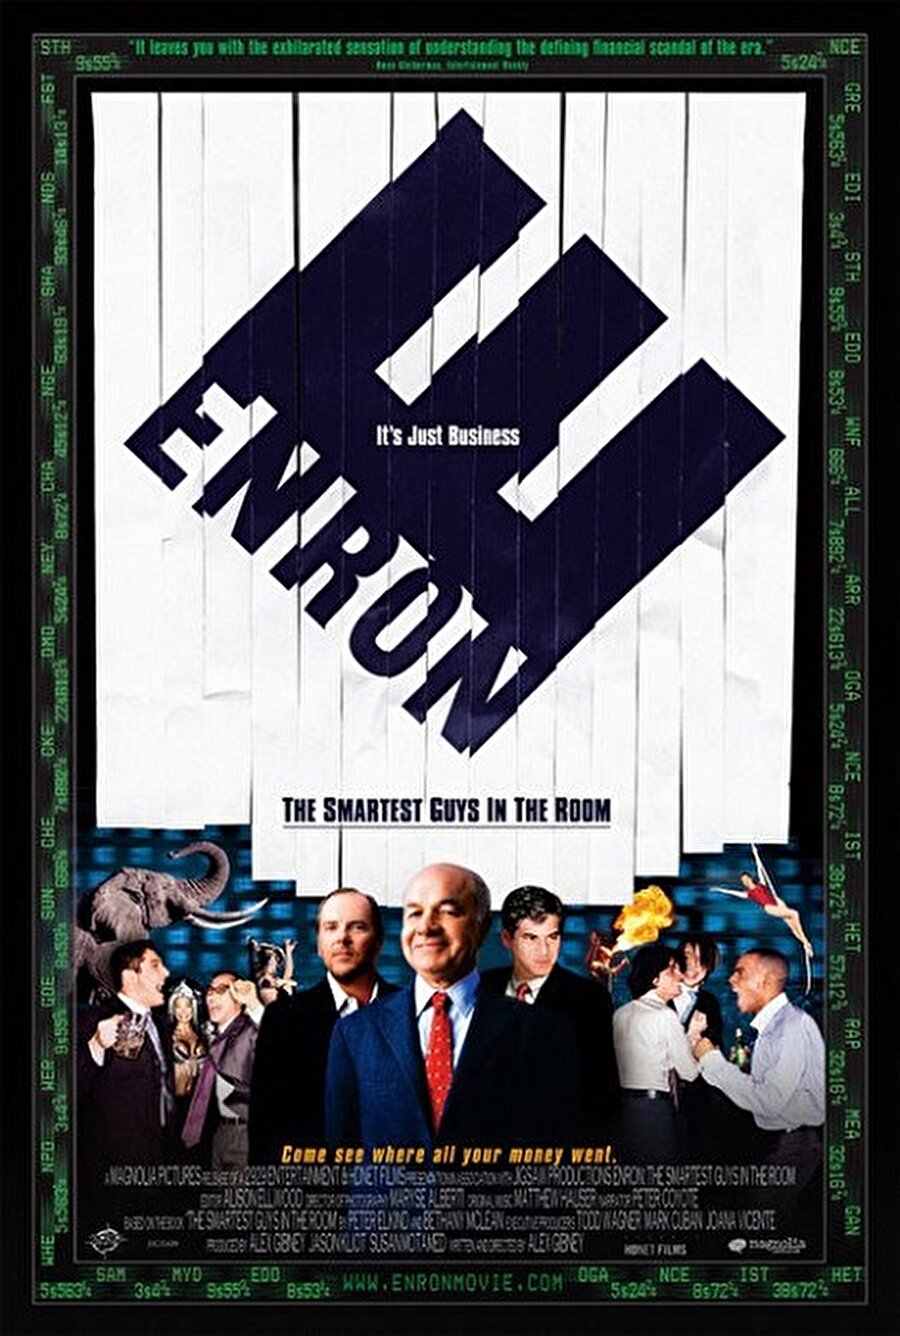 Piyasanın Uyanıkları (Enron : The Smartest Guys in The Room) 
Yapım : 2005 – ABD
Tür : Belgesel
Yönetmen : Alex Gibney
Puan : 7.7/10

 Özeti : Tarihin en büyük şirket skandallarından birinin trajik öyküsü. “The Smartest Guys in the Room” adlı kitabından yola çıkan belgesel film, bir yandan işin iç yüzünü bilen tanıkların anlatılarına yer verirken, ulaşılması neredeyse imkansız olan görsel ve işitsel kanıtlar da sergileyerek, Enron yöneticilerinin olağanüstü kişisel lükslerini ve şirket felsefesi maskesi altındaki ahlaki yozluğu da açığa çıkarıyor.